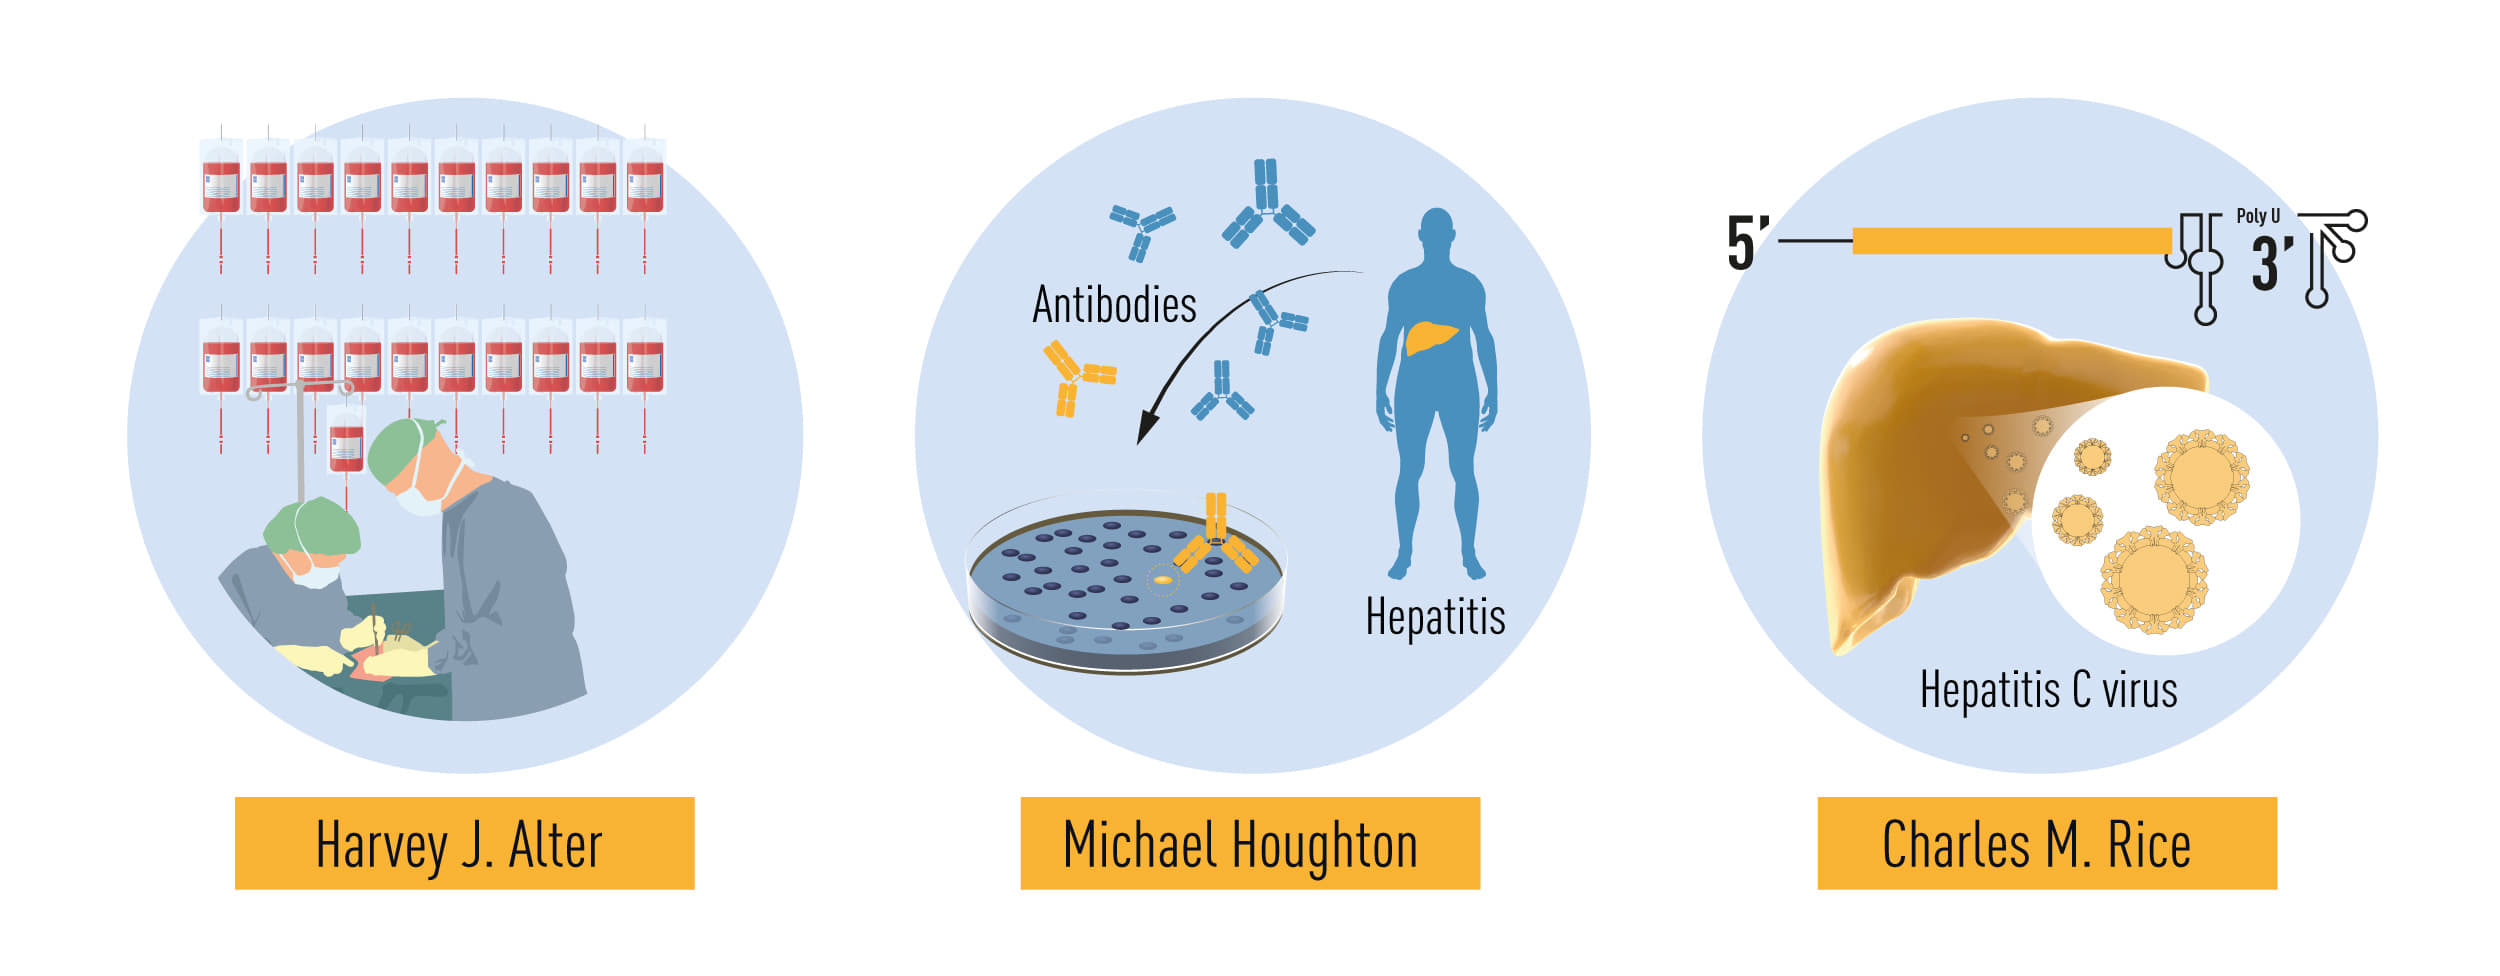 Wkład laureatów w badania nad wirusem Hepatitis C